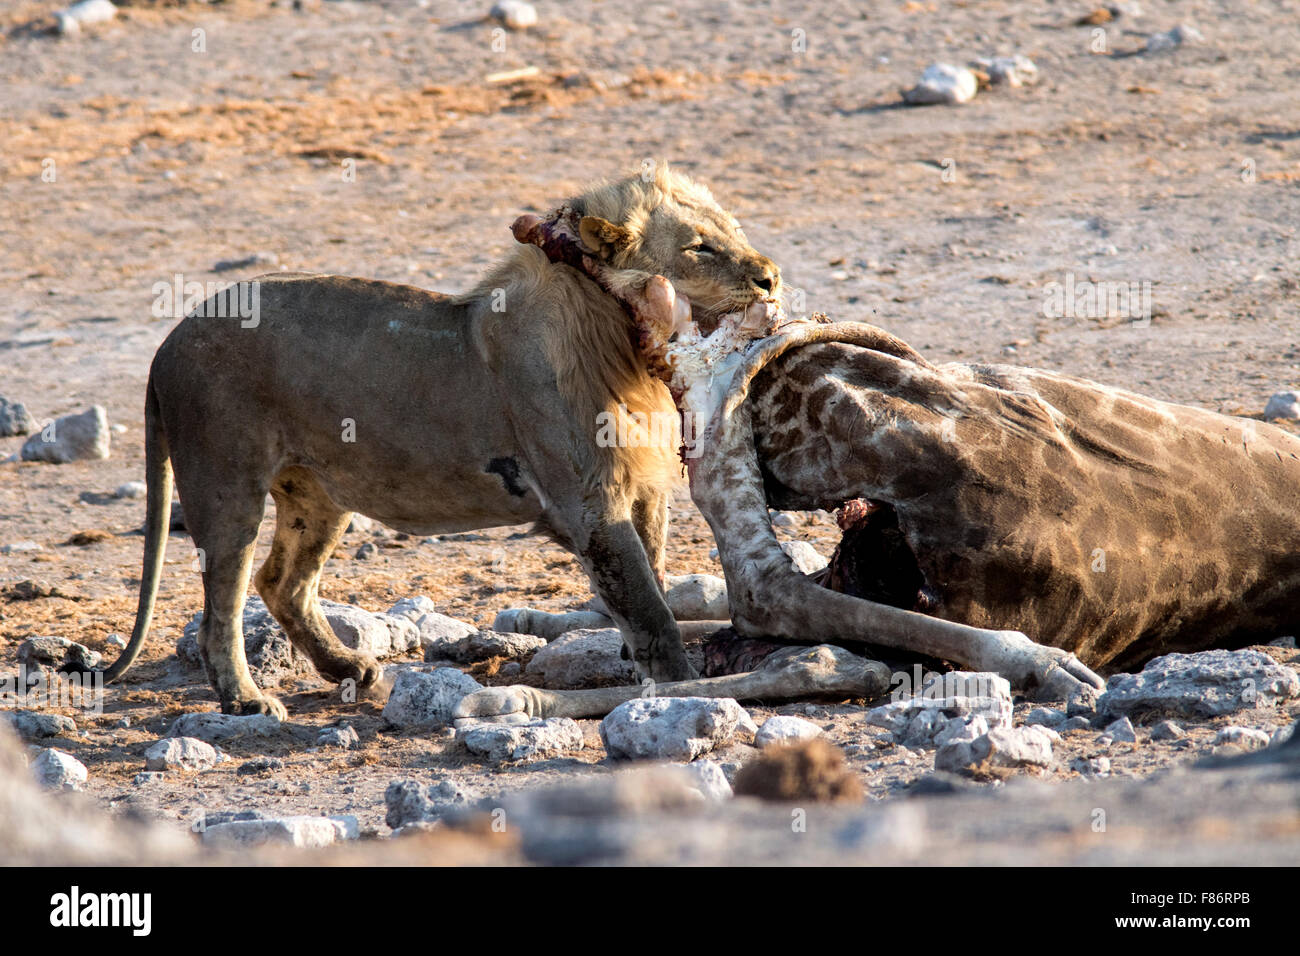 African Lion (Panthera leo) eating giraffe kill - Etosha National Park, Namibia, Africa Stock Photo